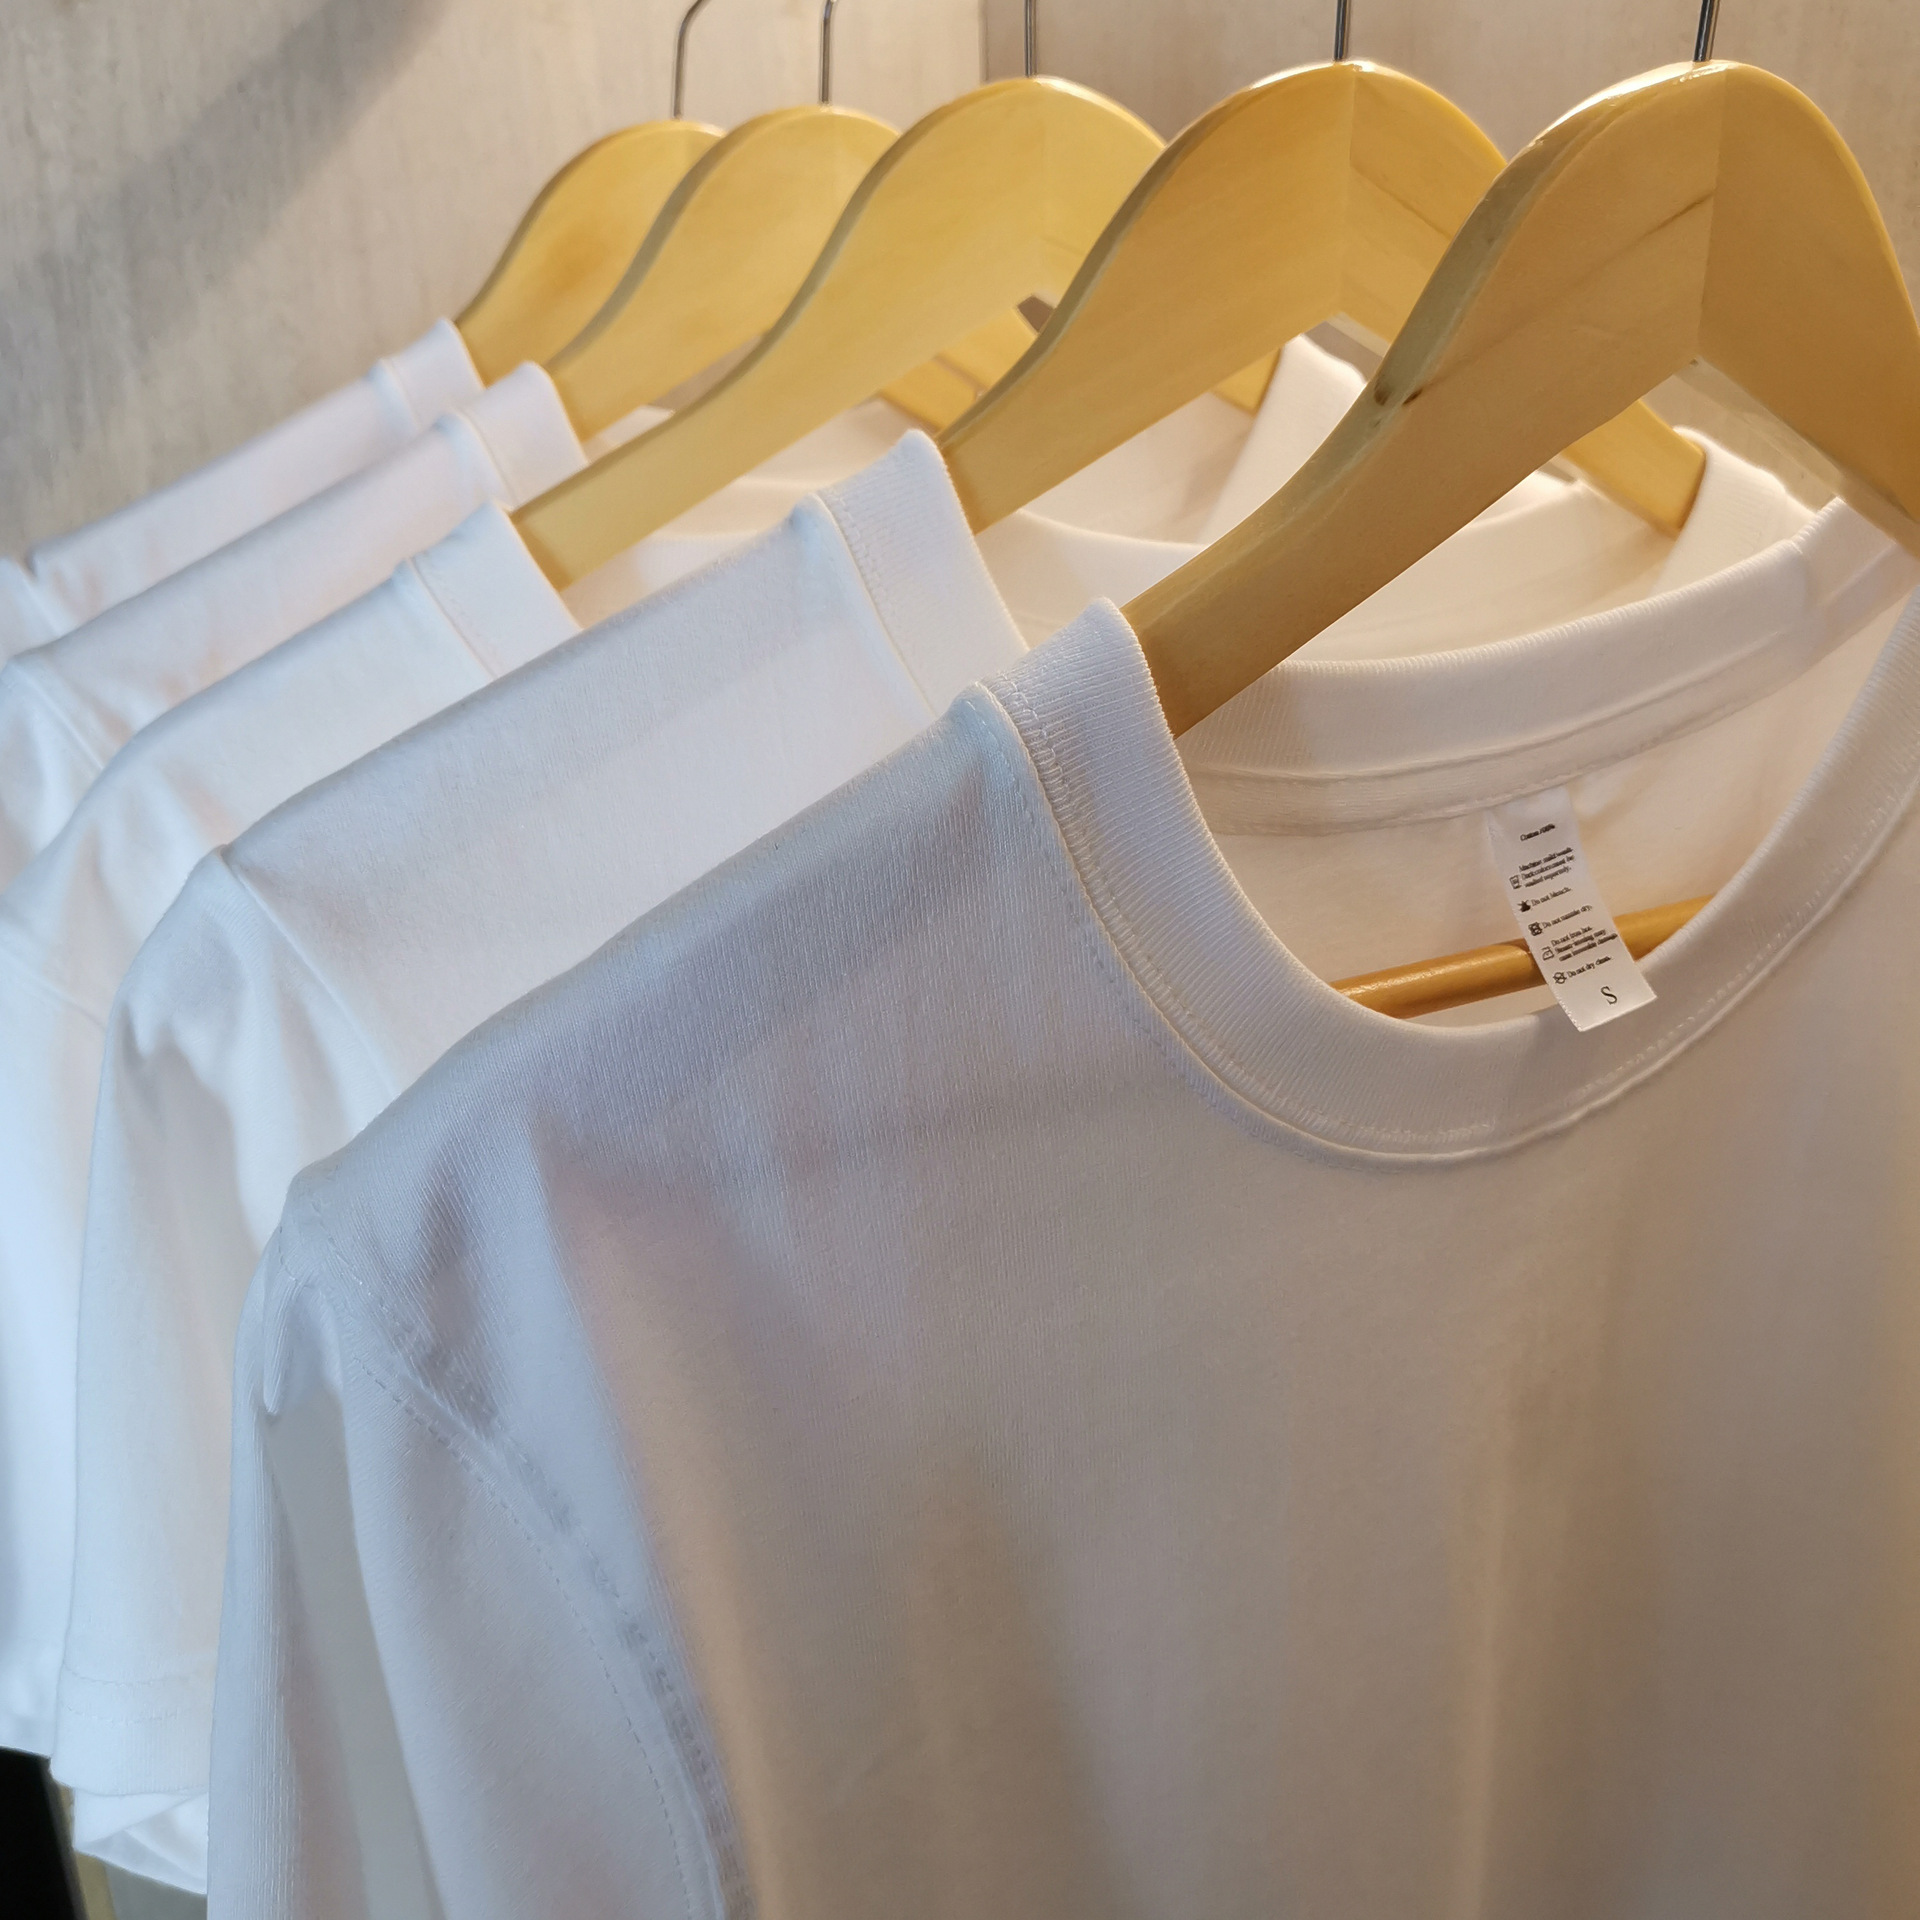 Export Original Cotton Short-Sleeved T-shirt Loose Mid-Length plus Size Women's Clothes Top Versatile Color Clothes Factory Direct Sales